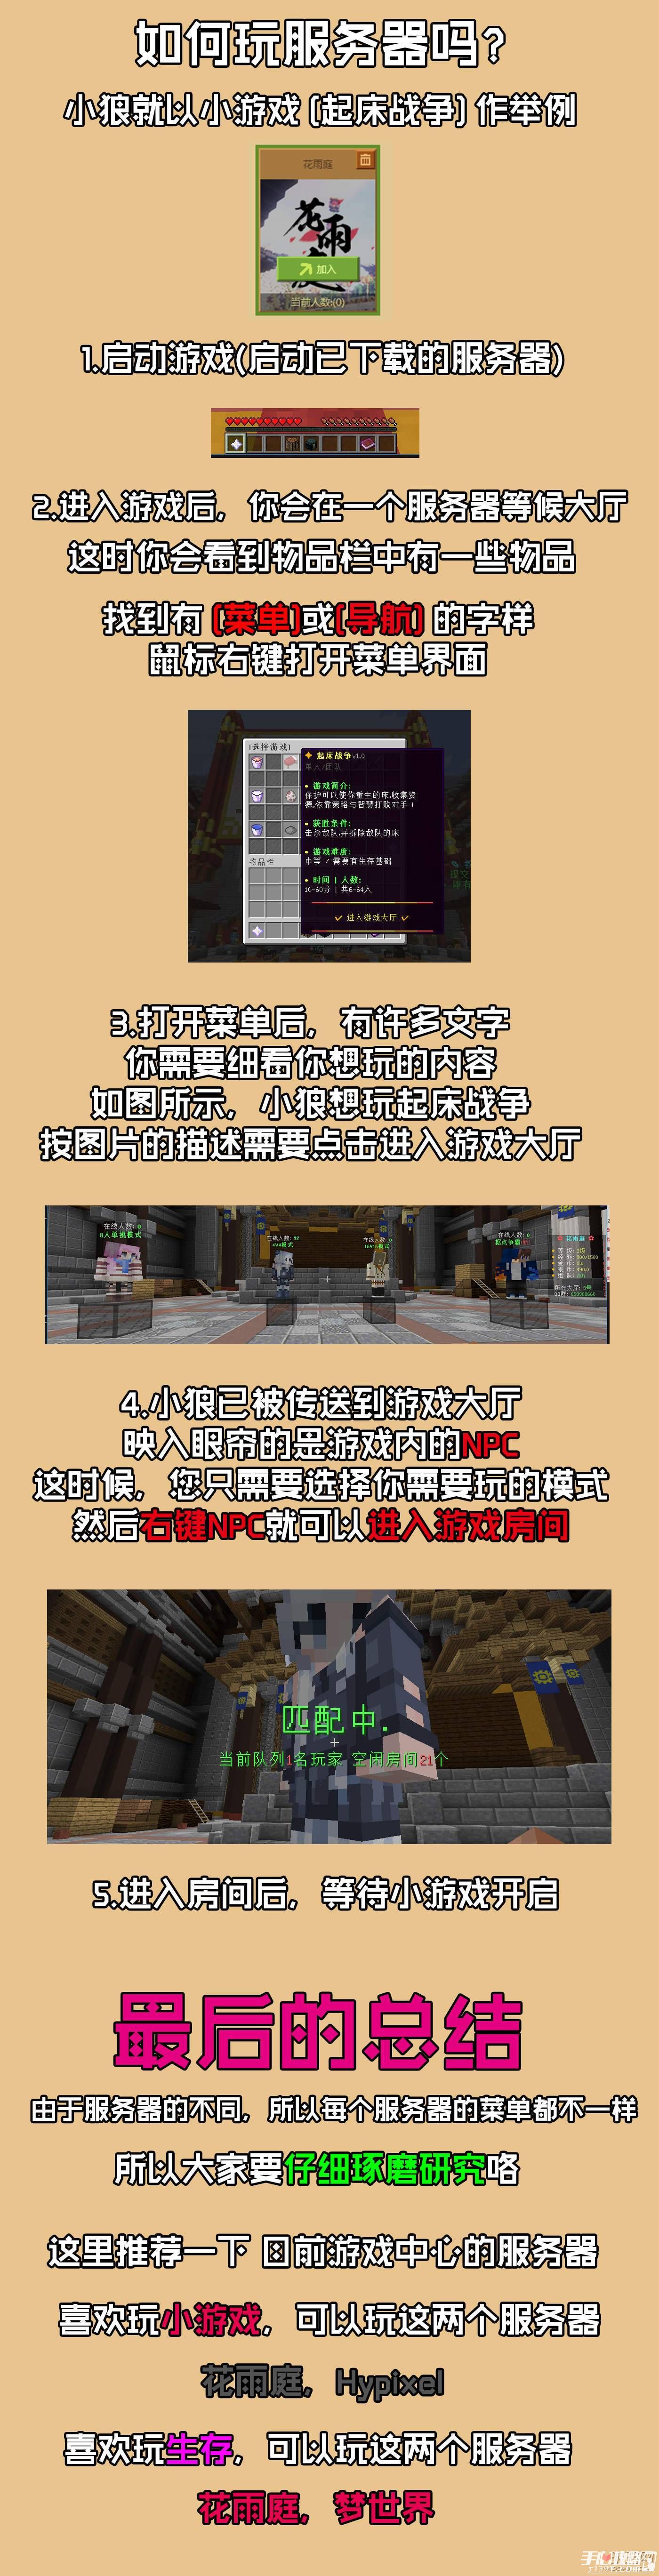 《我的世界》中国版游戏中心图文全模式进入方法攻略讲解 3